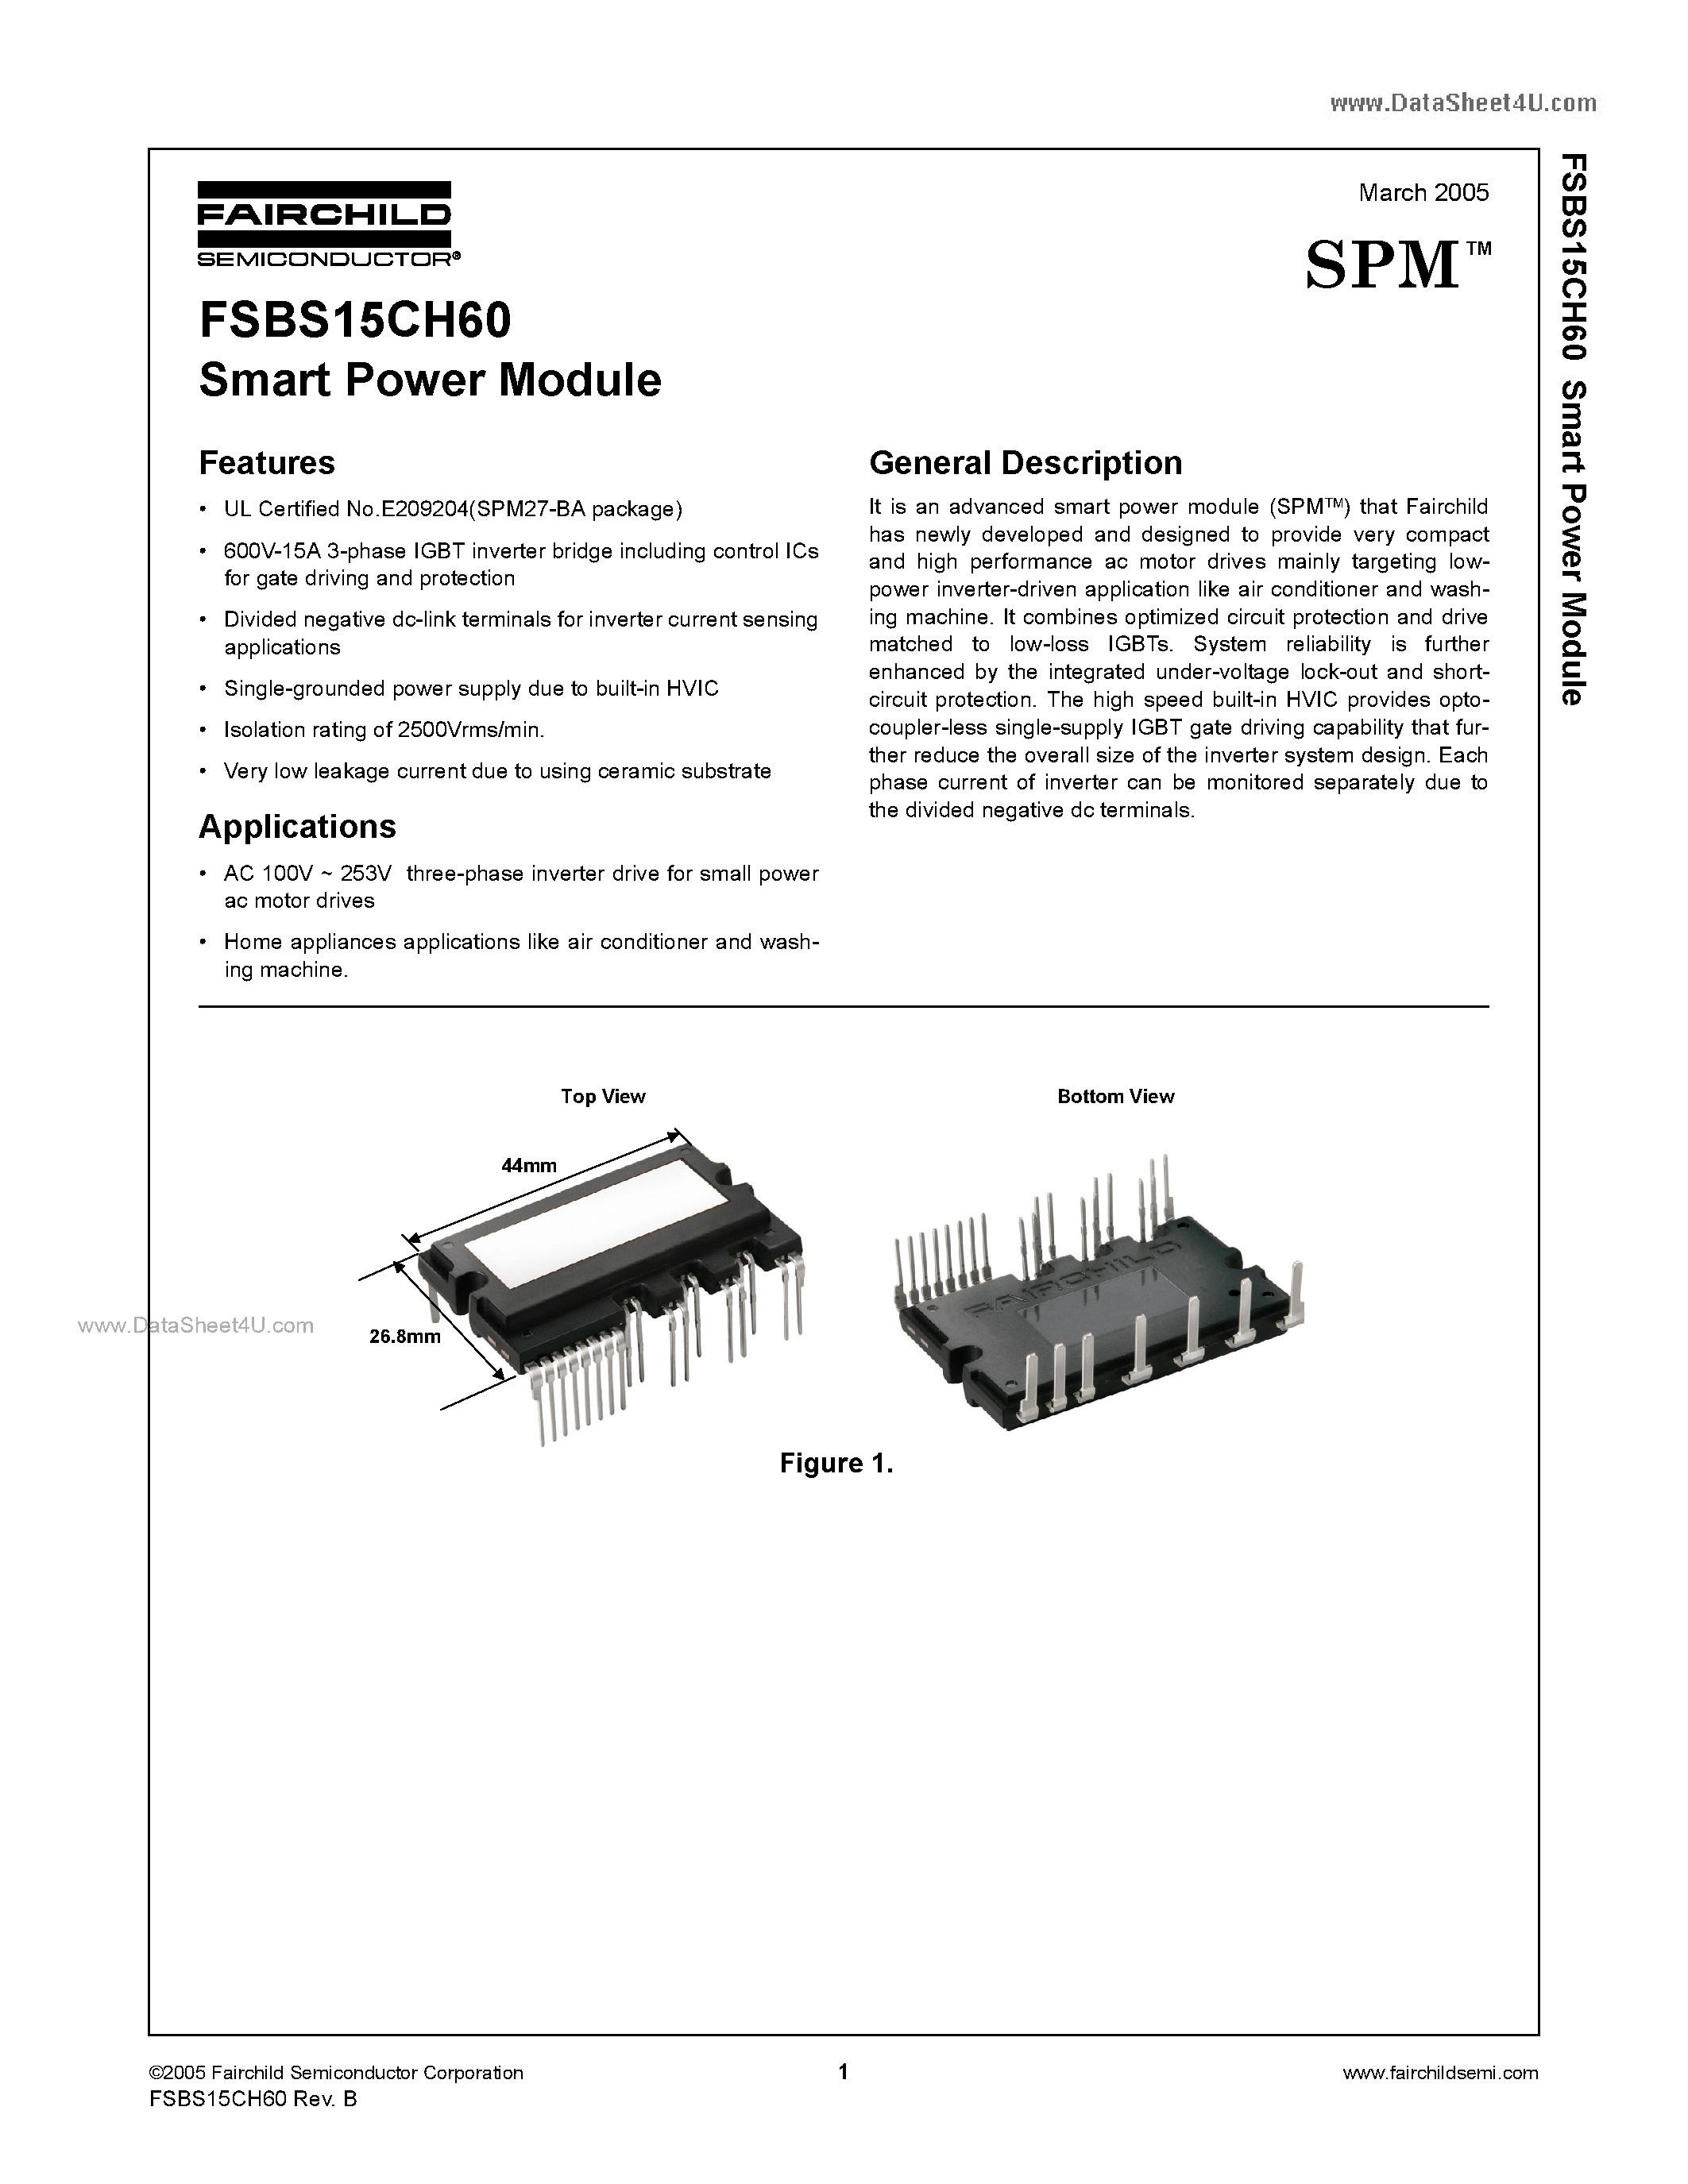 Даташит FSBS15CH60 - Smart Power Module страница 1